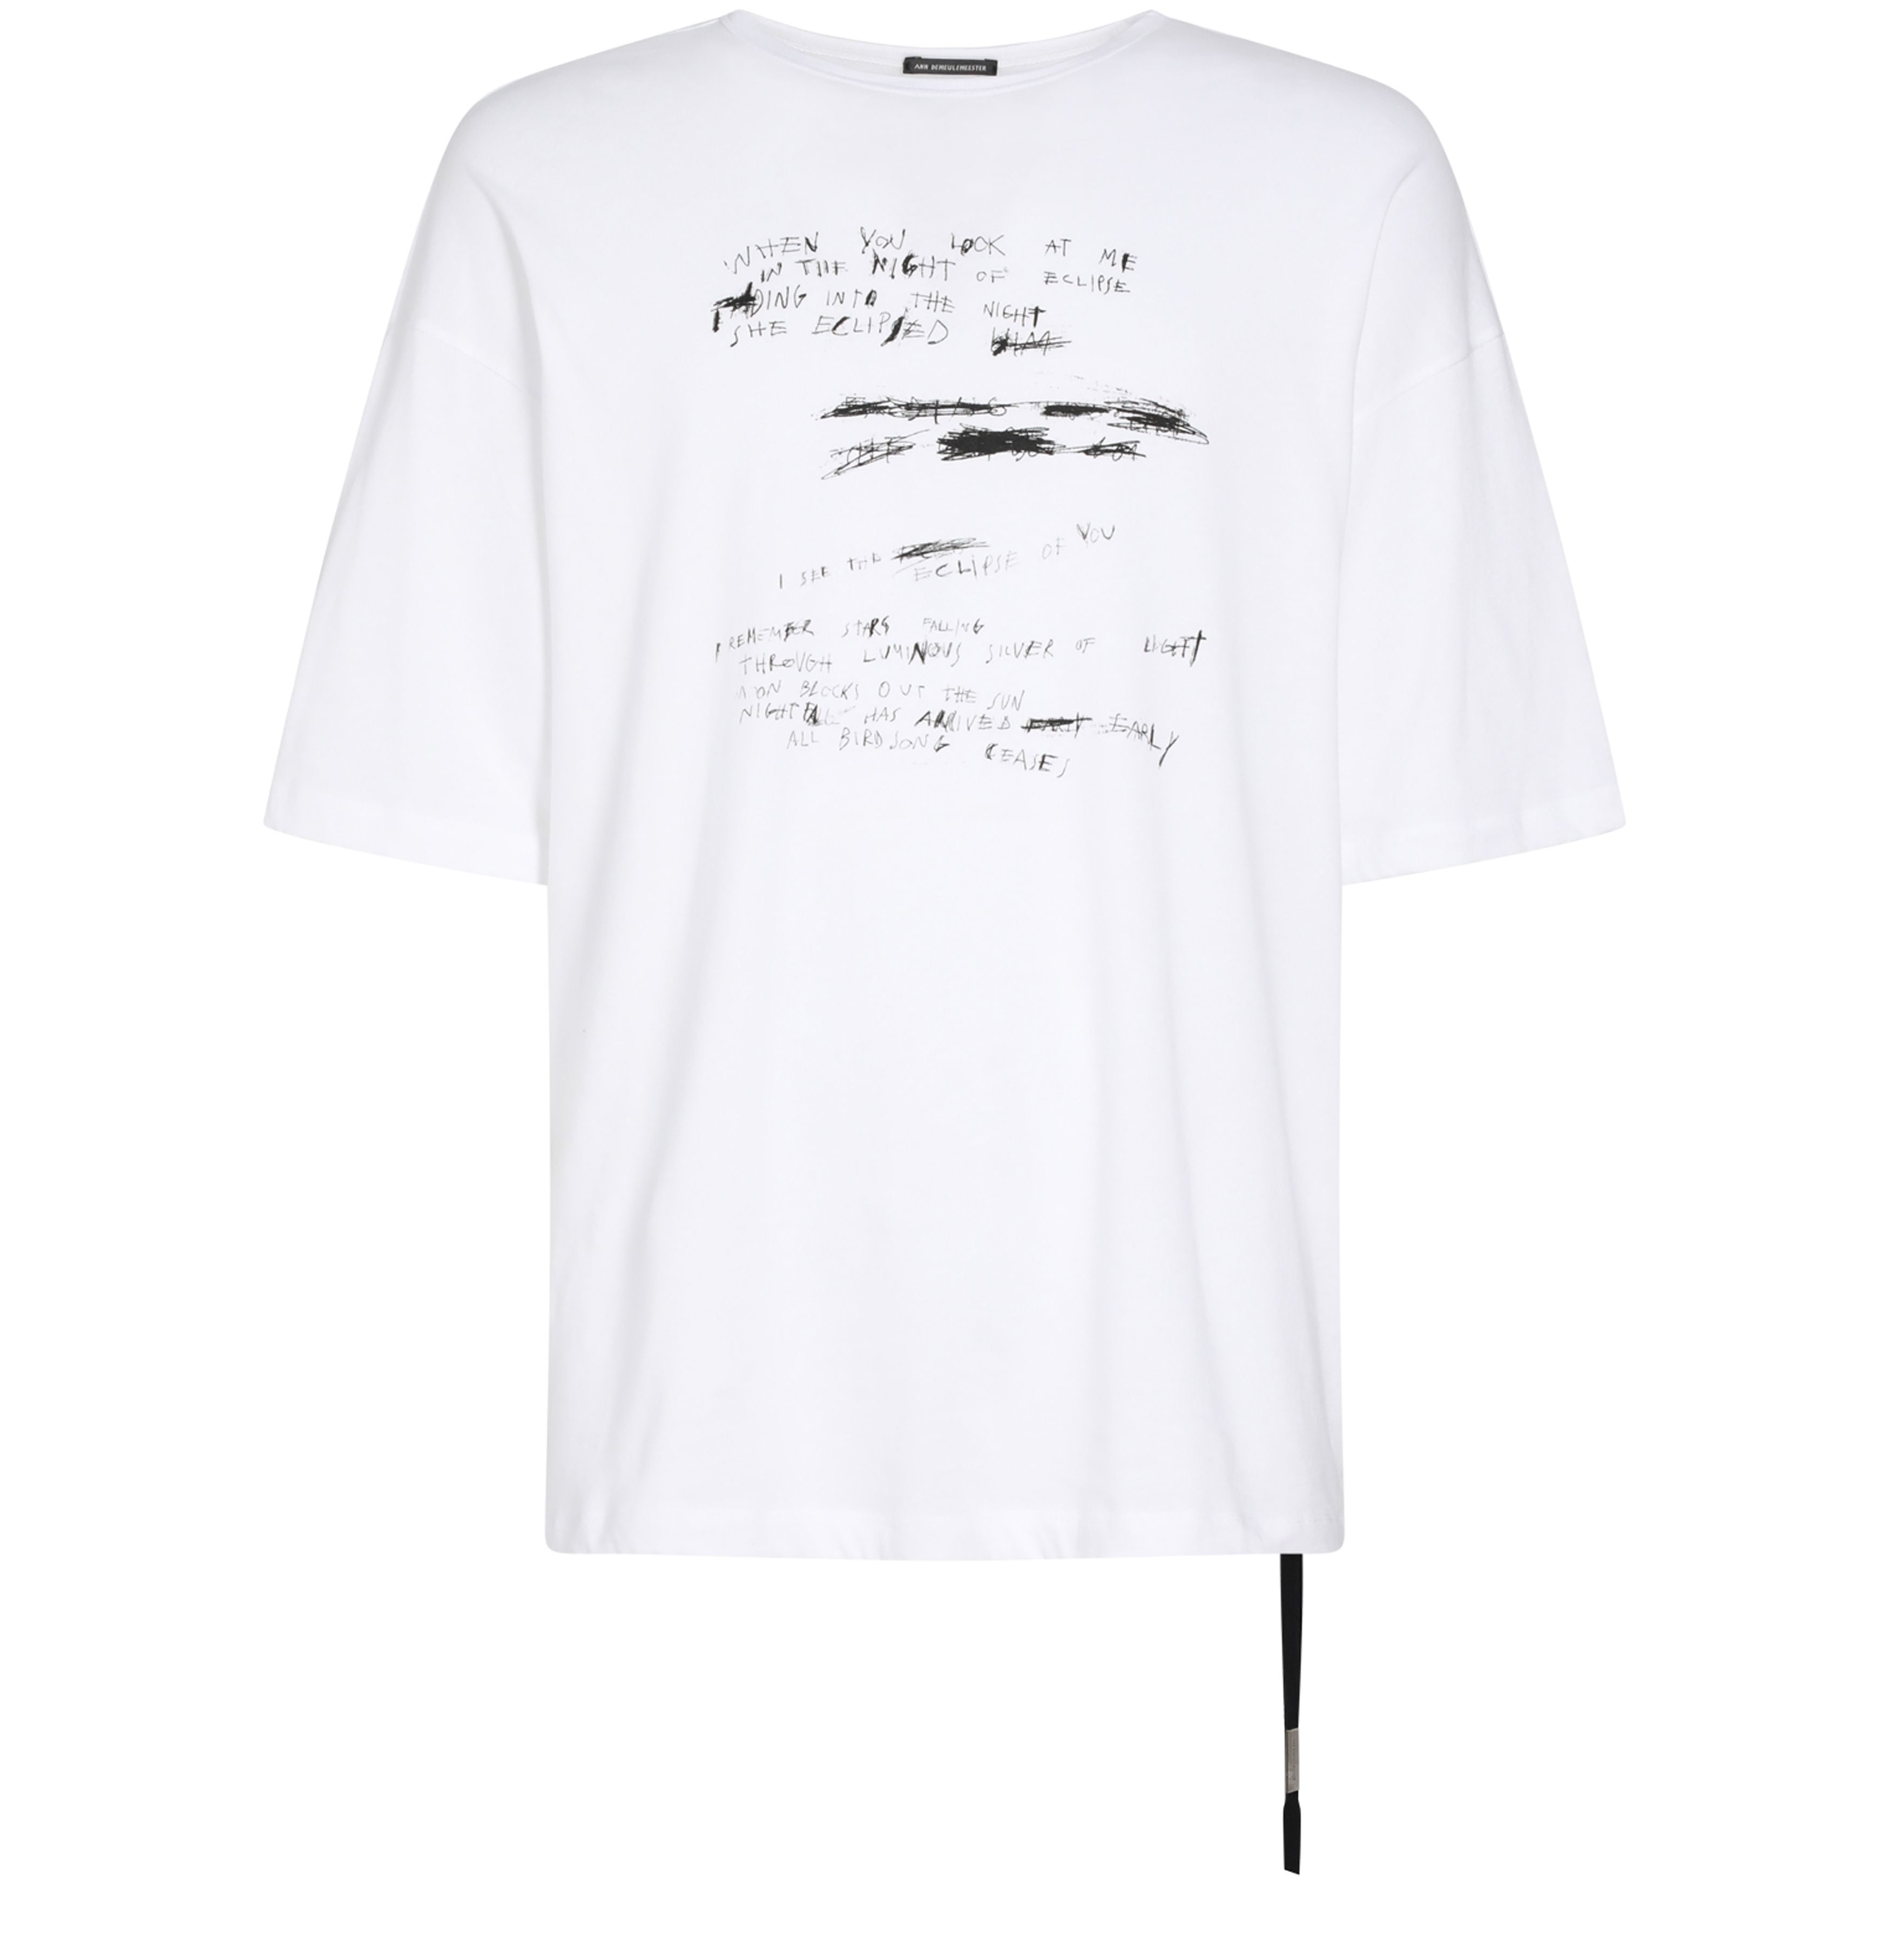 Ann Demeulemeester Dieter high comfort fit t-shirt Handwriting print